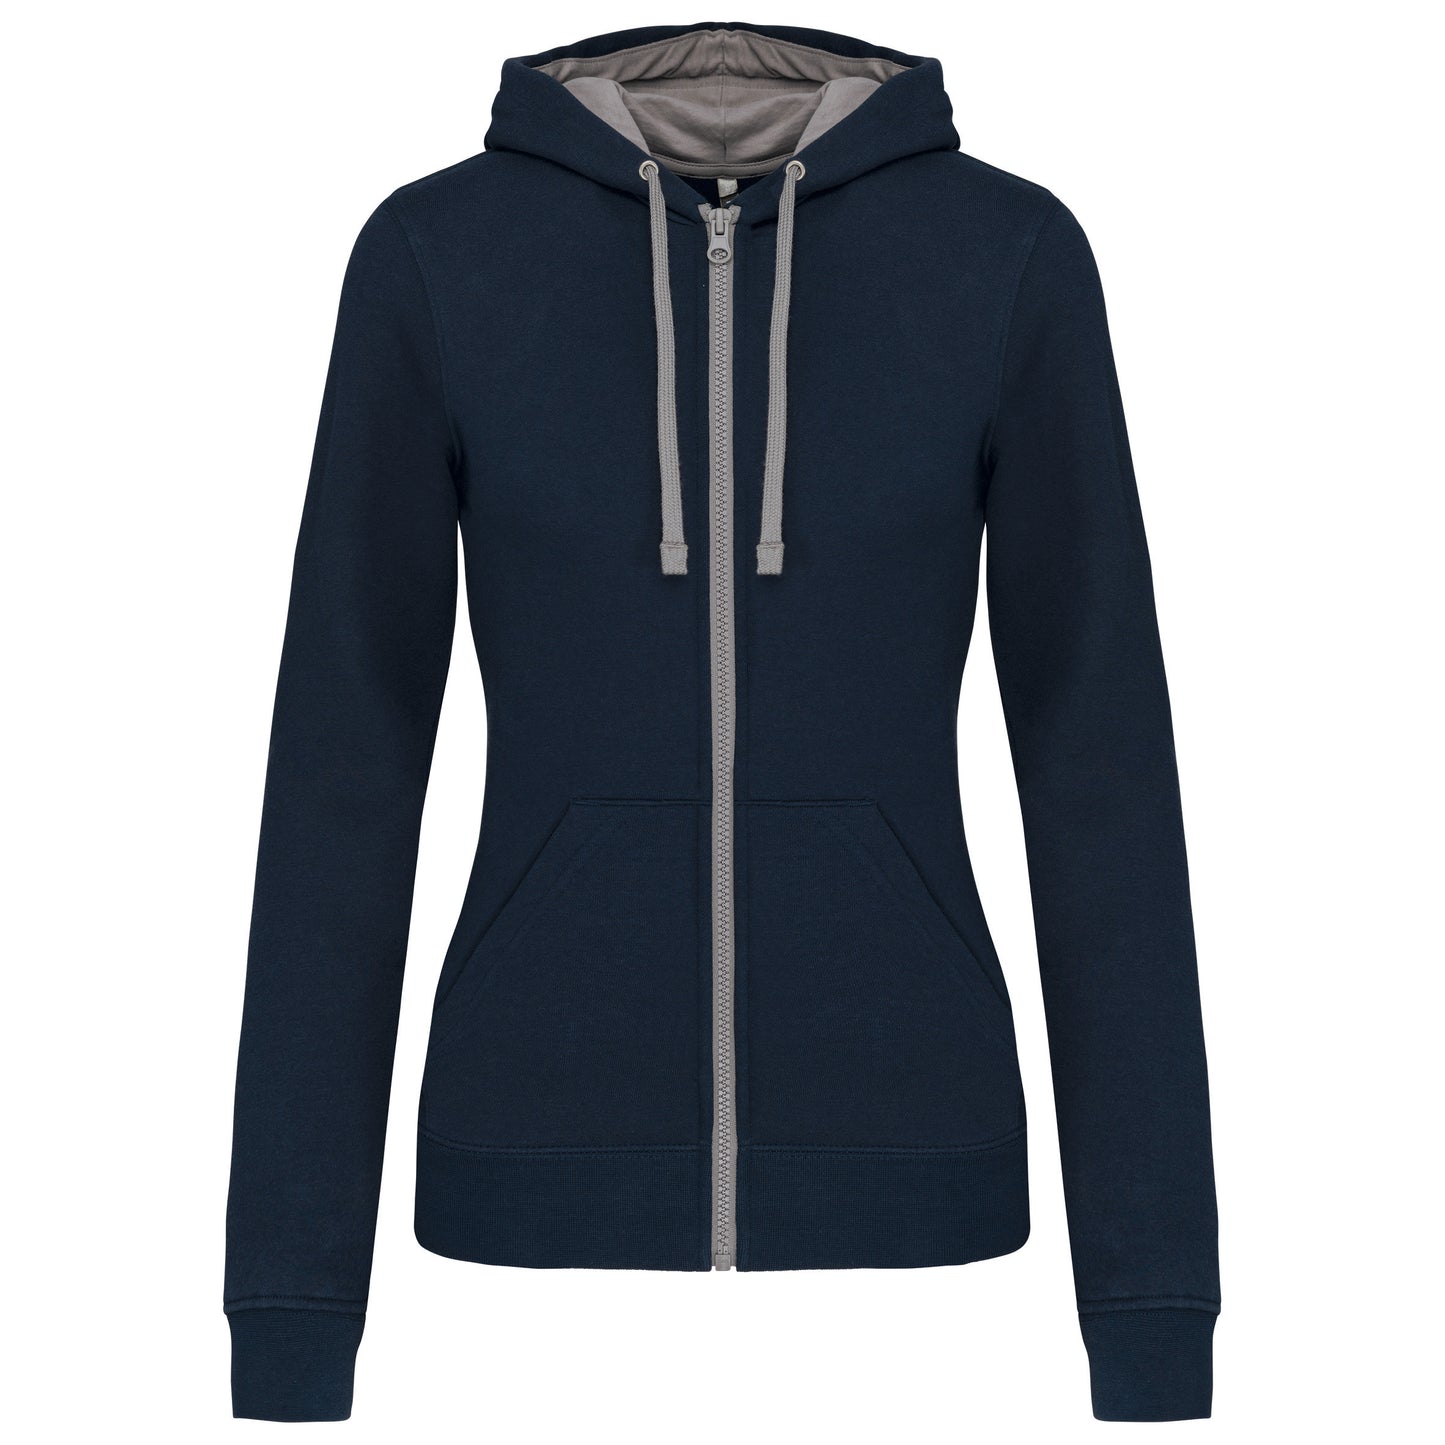 K467 - Sweat-shirt zippé capuche contrastée femme